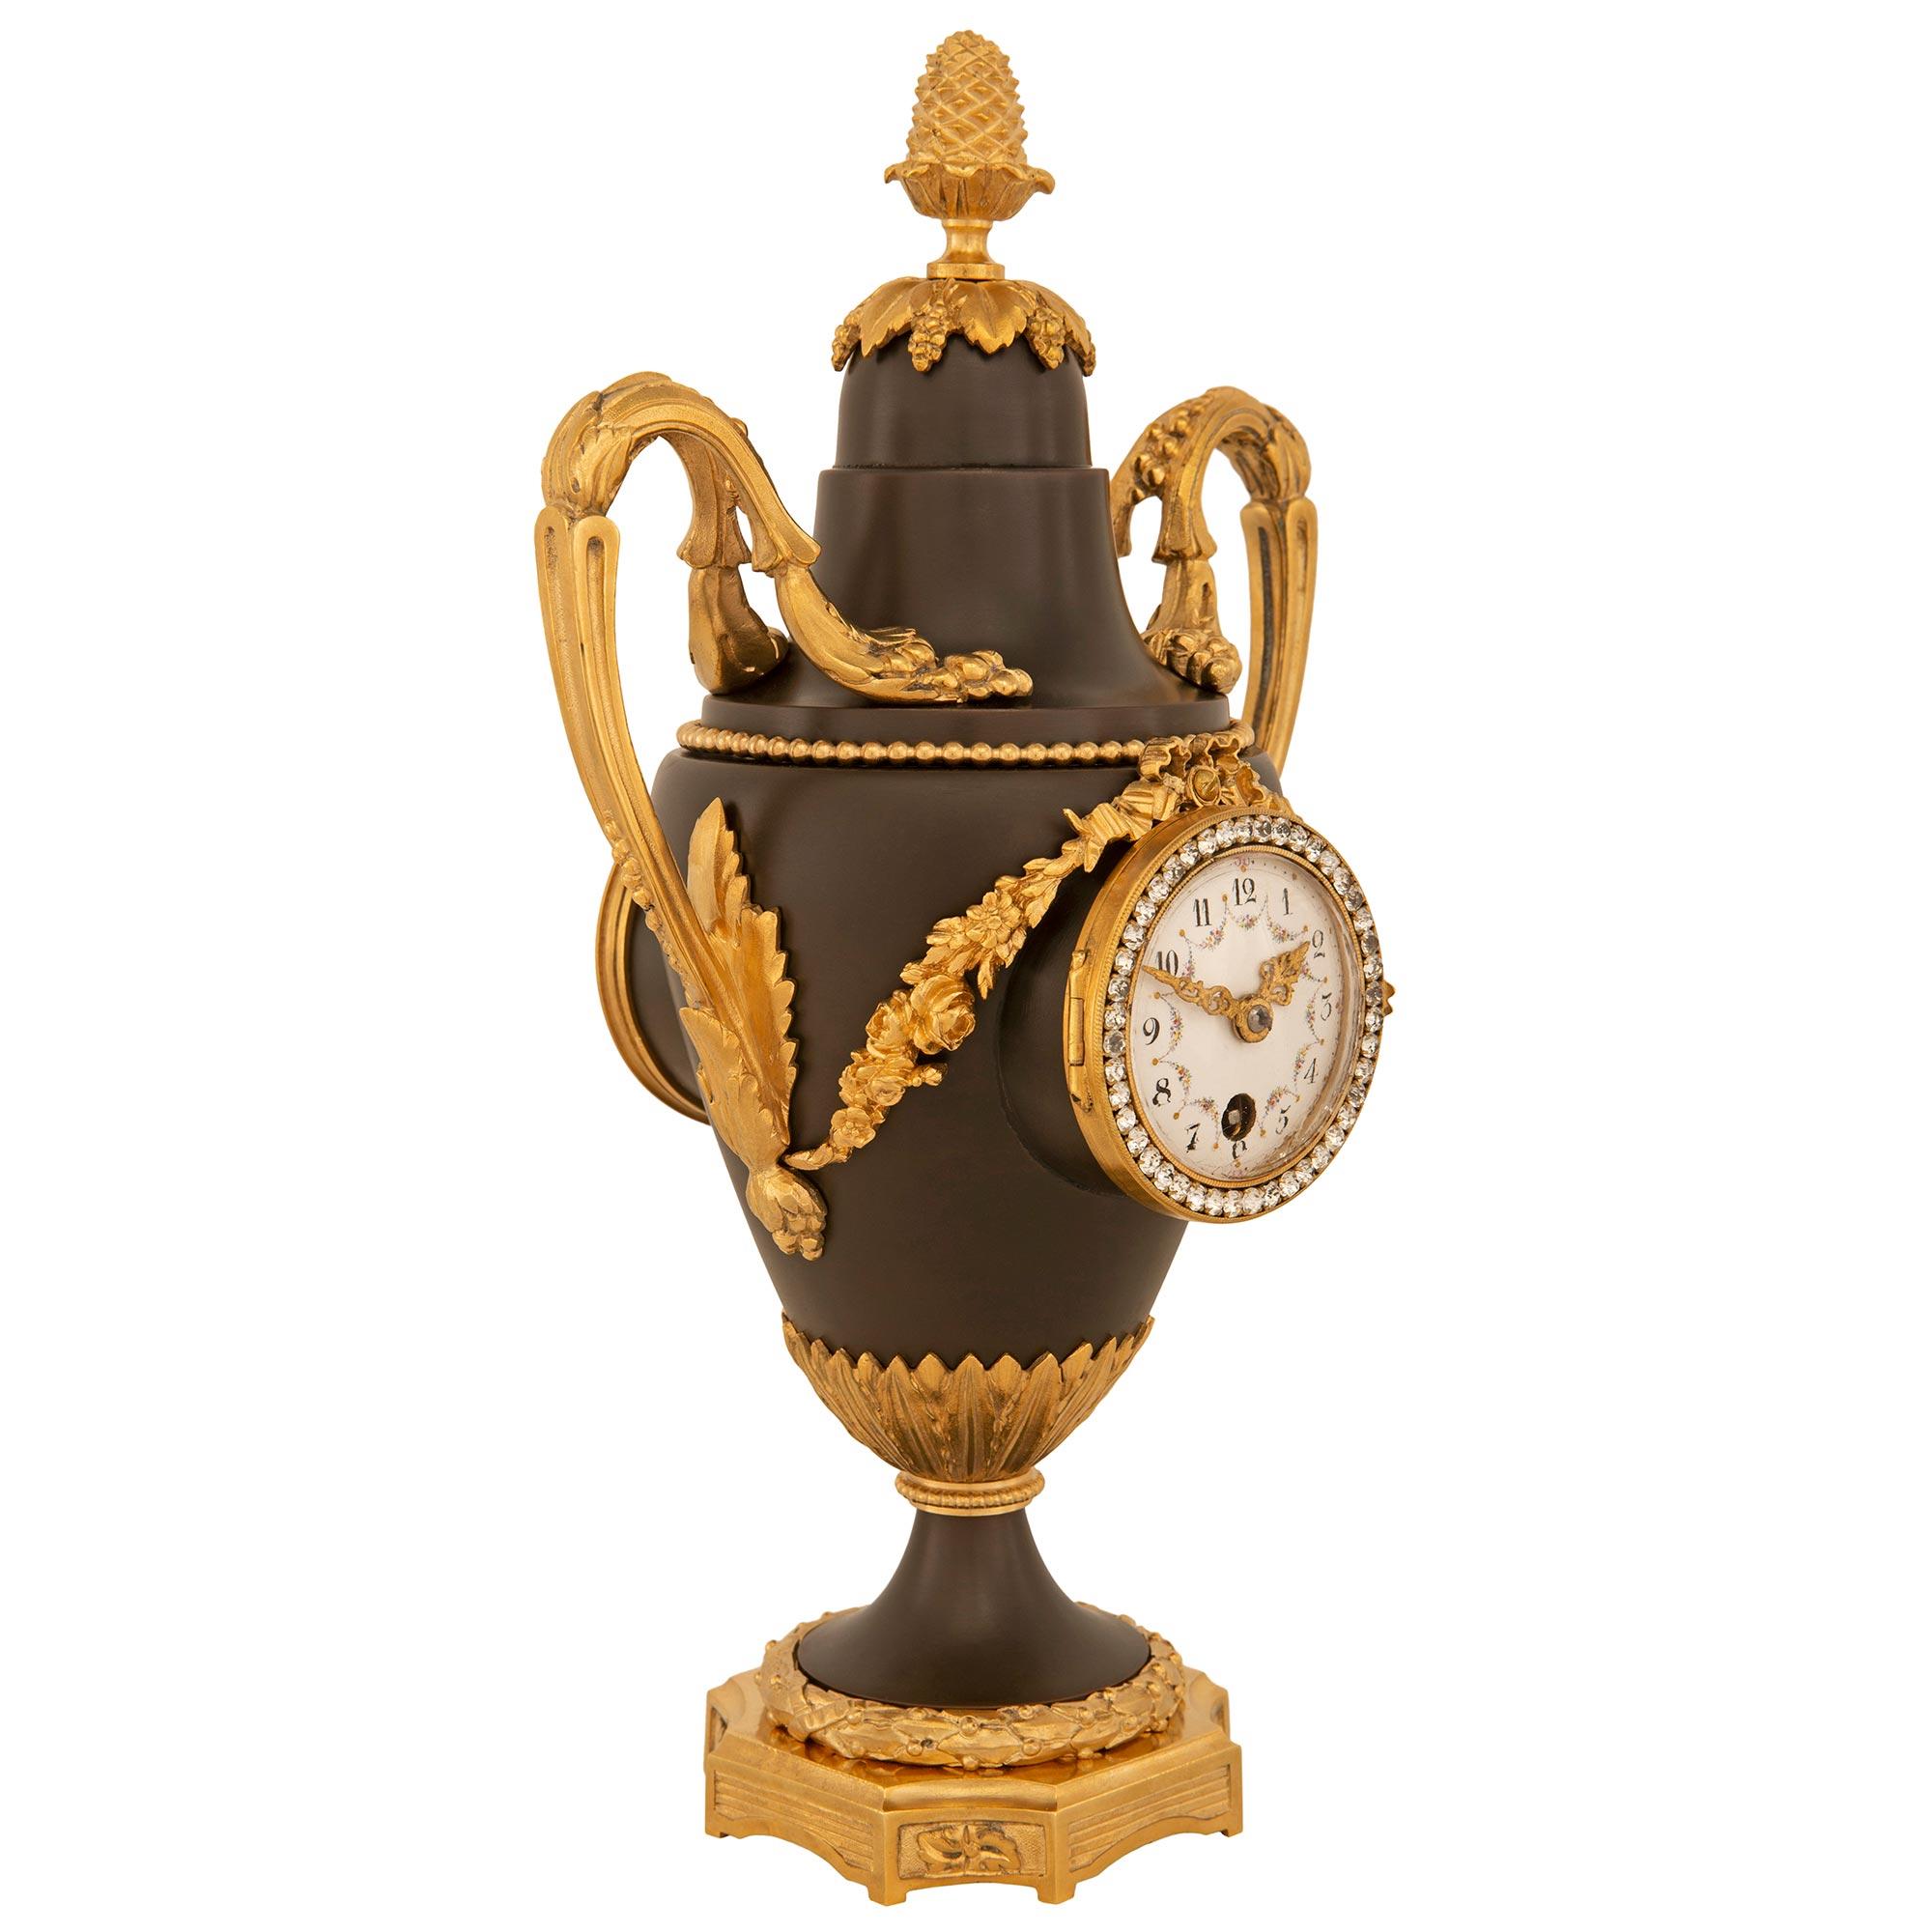 Eine elegante französische Uhr aus dem späten 19. Jahrhundert aus patinierter Bronze und Ormolu. Die Uhr in Form der Urne des Wohlstands wird von einem quadratischen Sockel mit konkaven Ecken und vertieften Platten getragen. Die konkaven Paneele